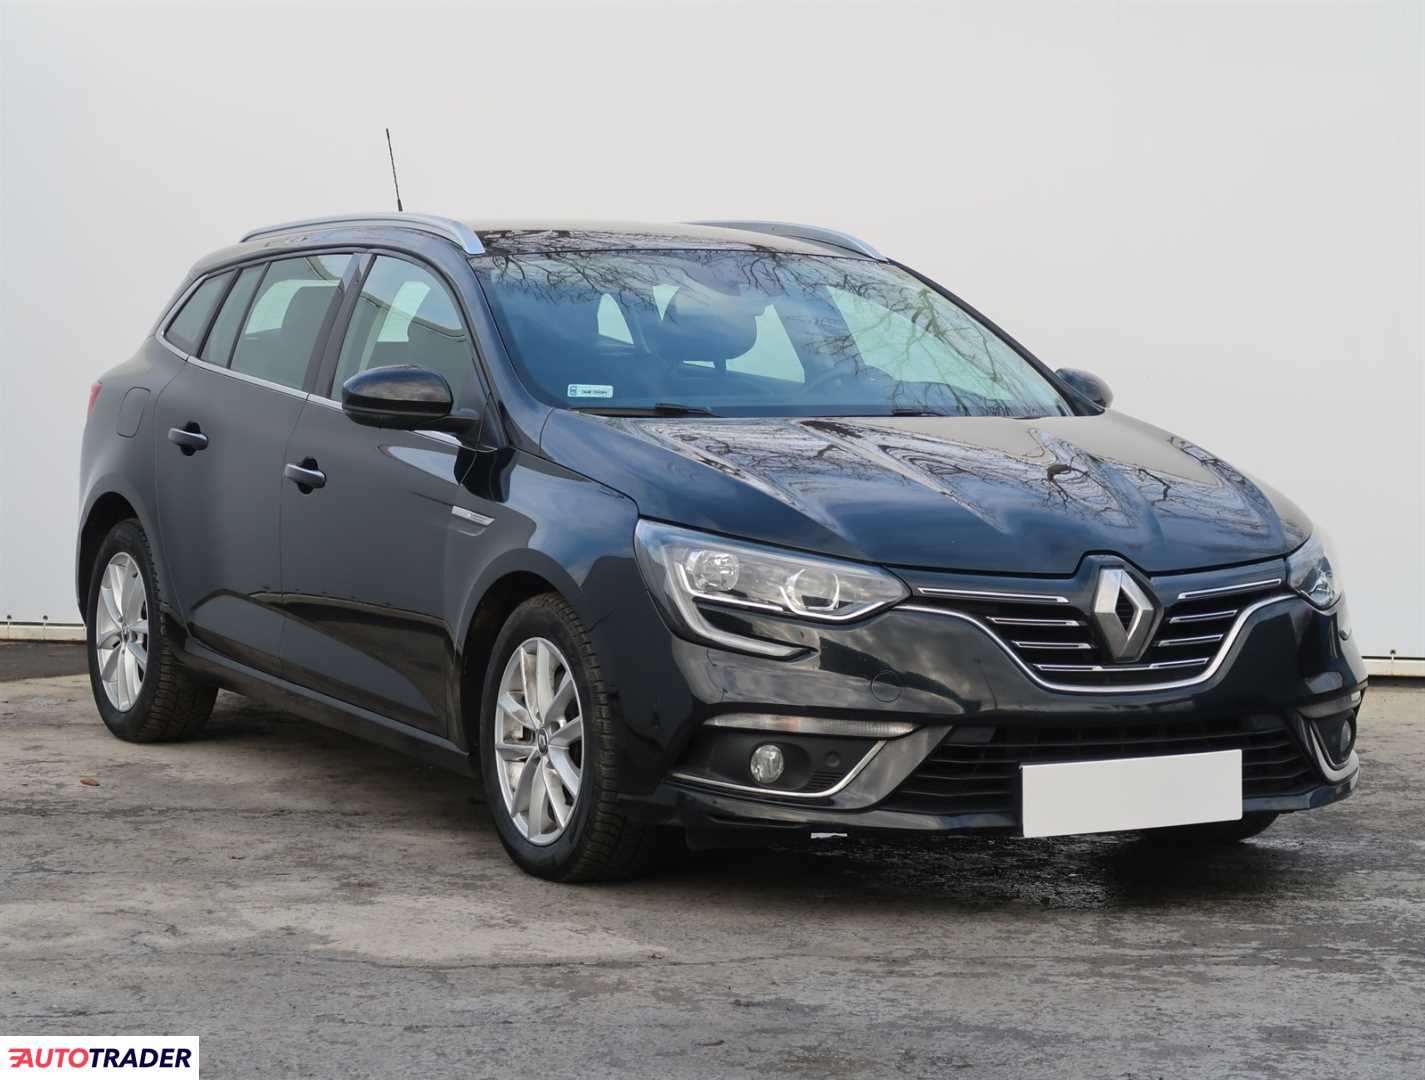 Renault Megane 2017 1.6 128 KM